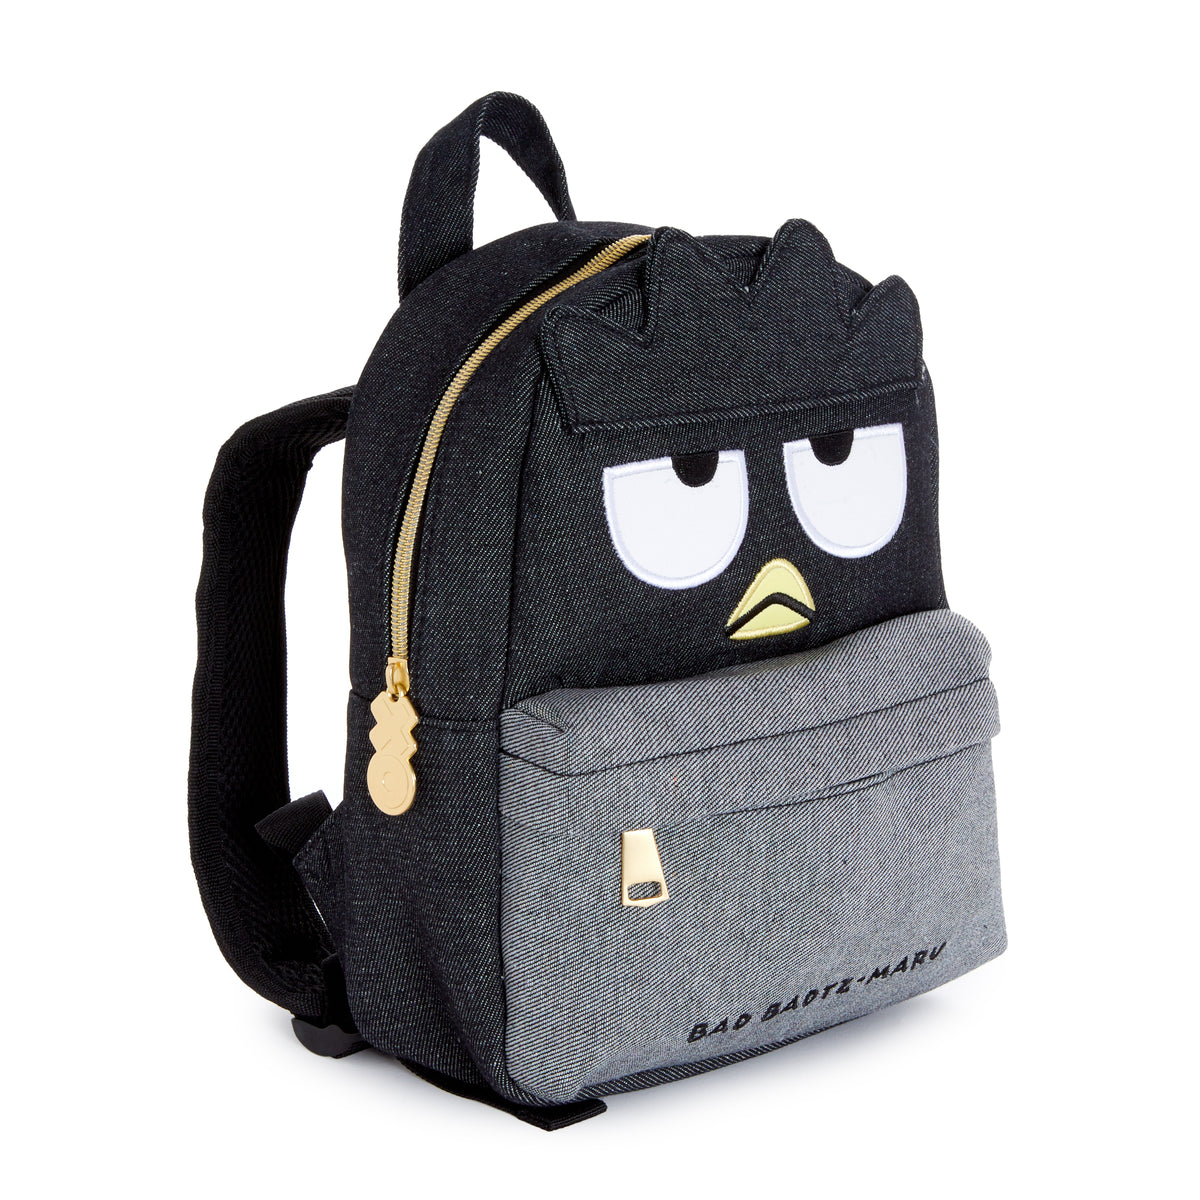 Buy Denim Backpack, Small Back-pack